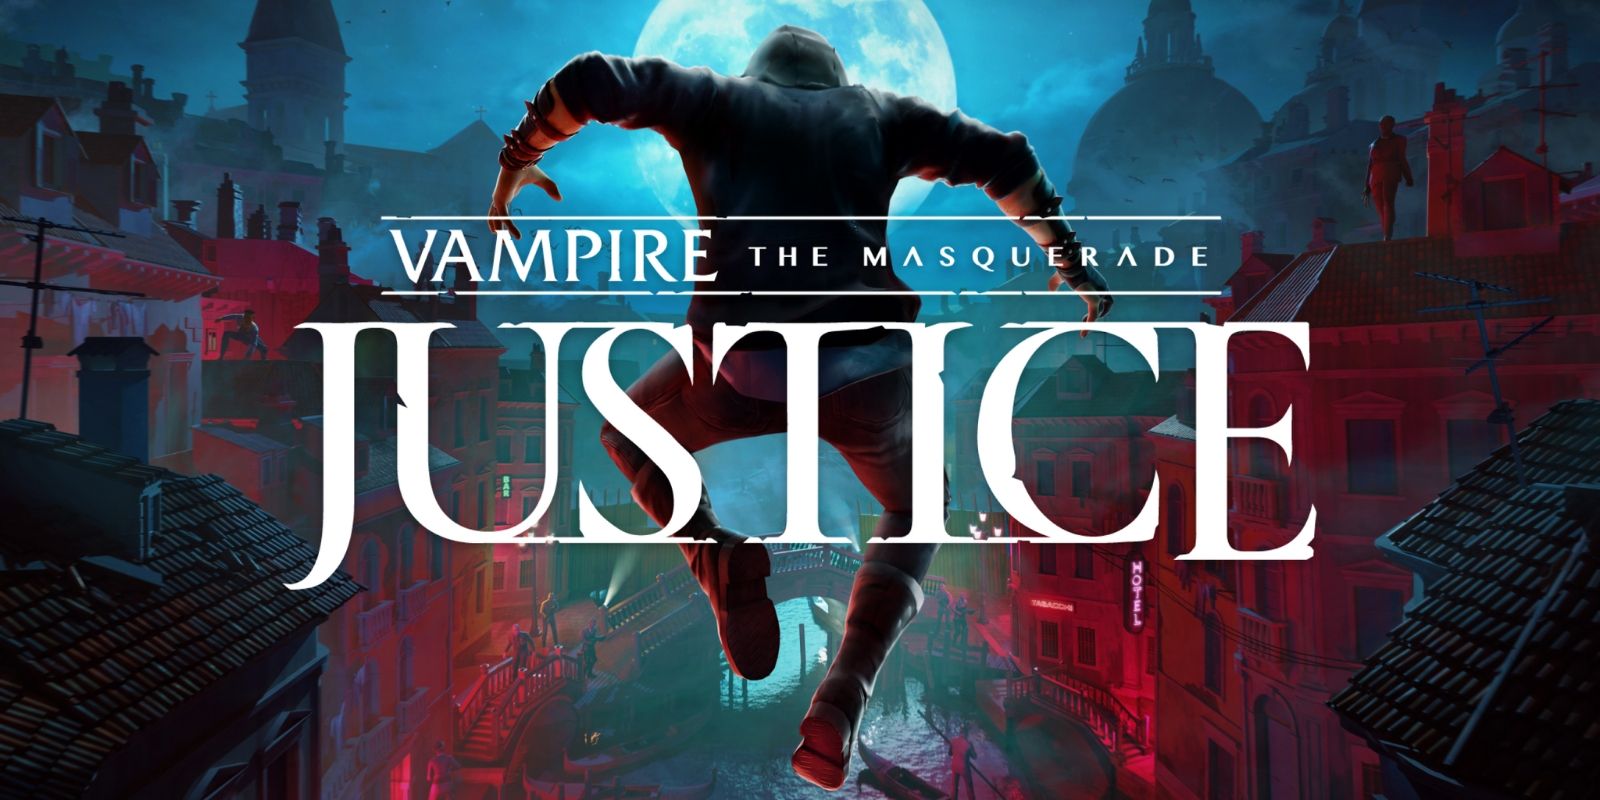 “Sombrío, sangriento e inmersivo” – Vampire: The Masquerade – Justice Review